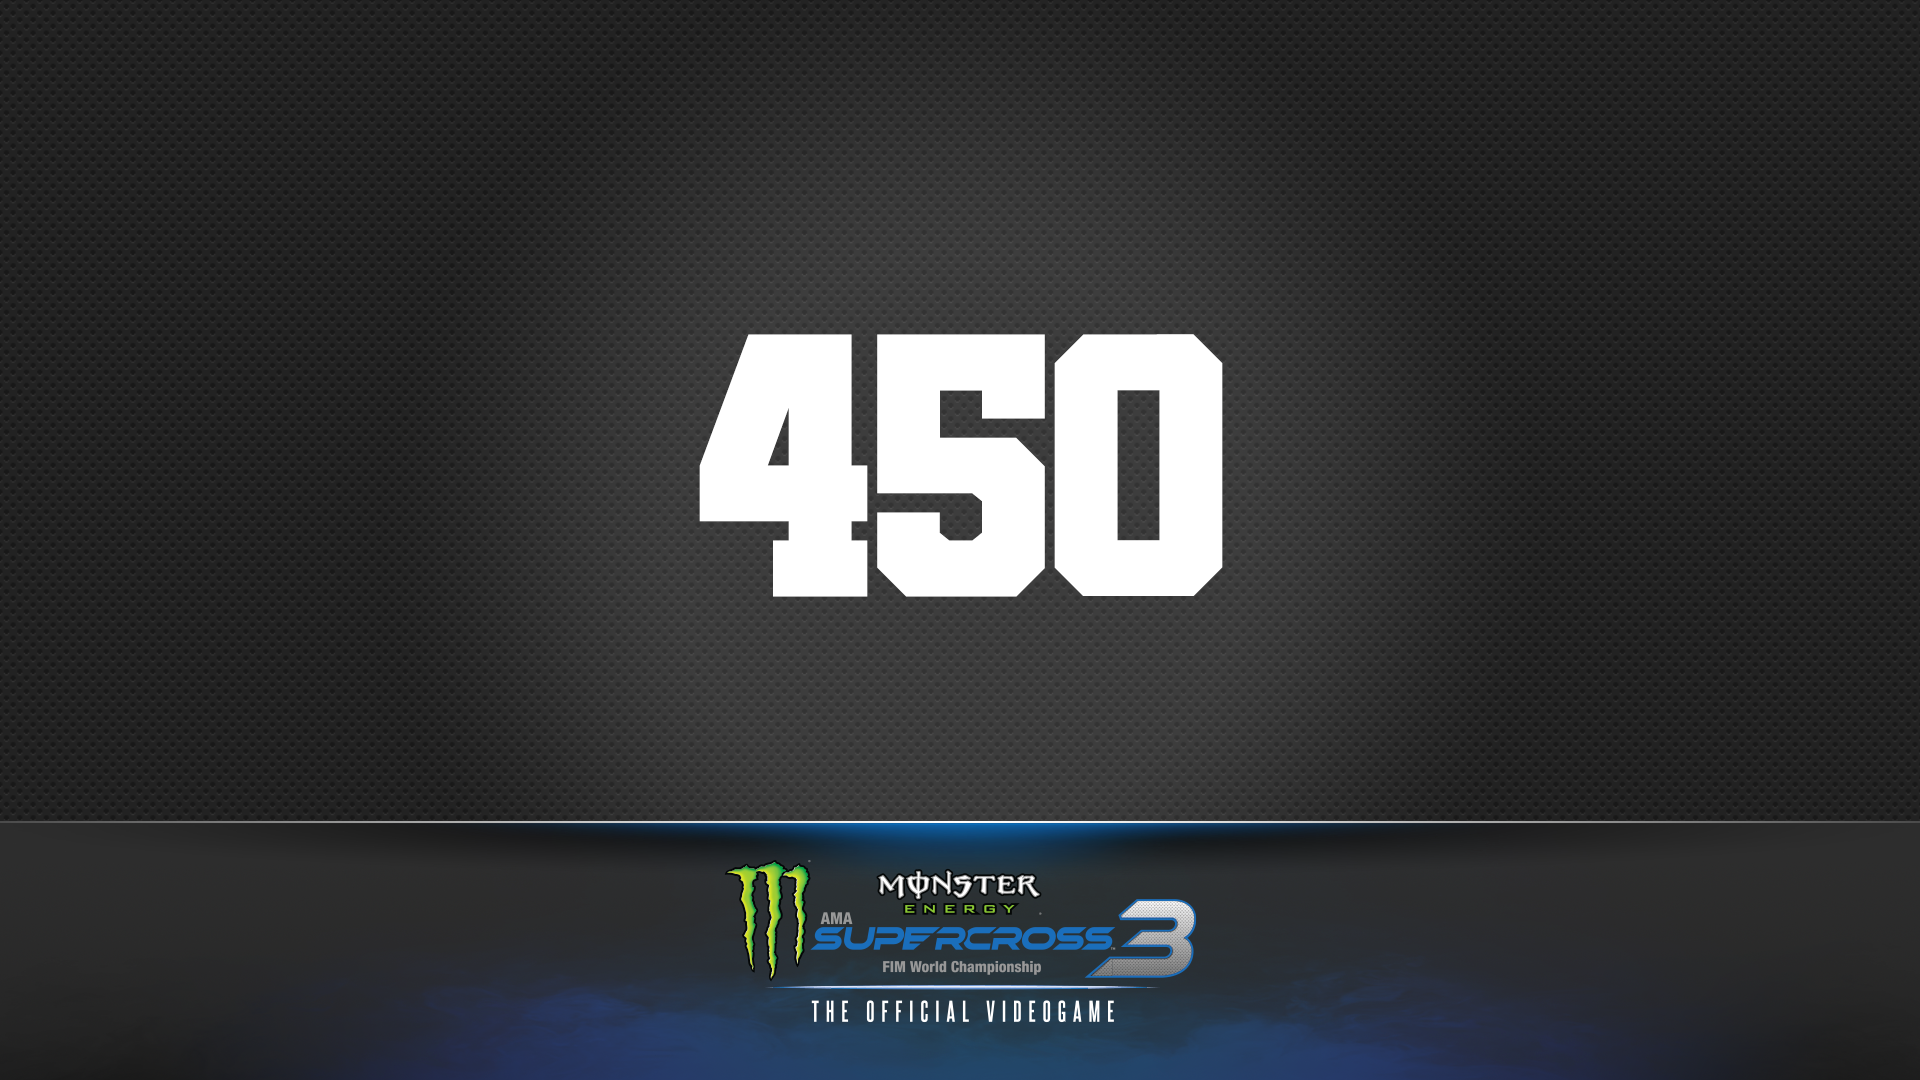 450 Champion